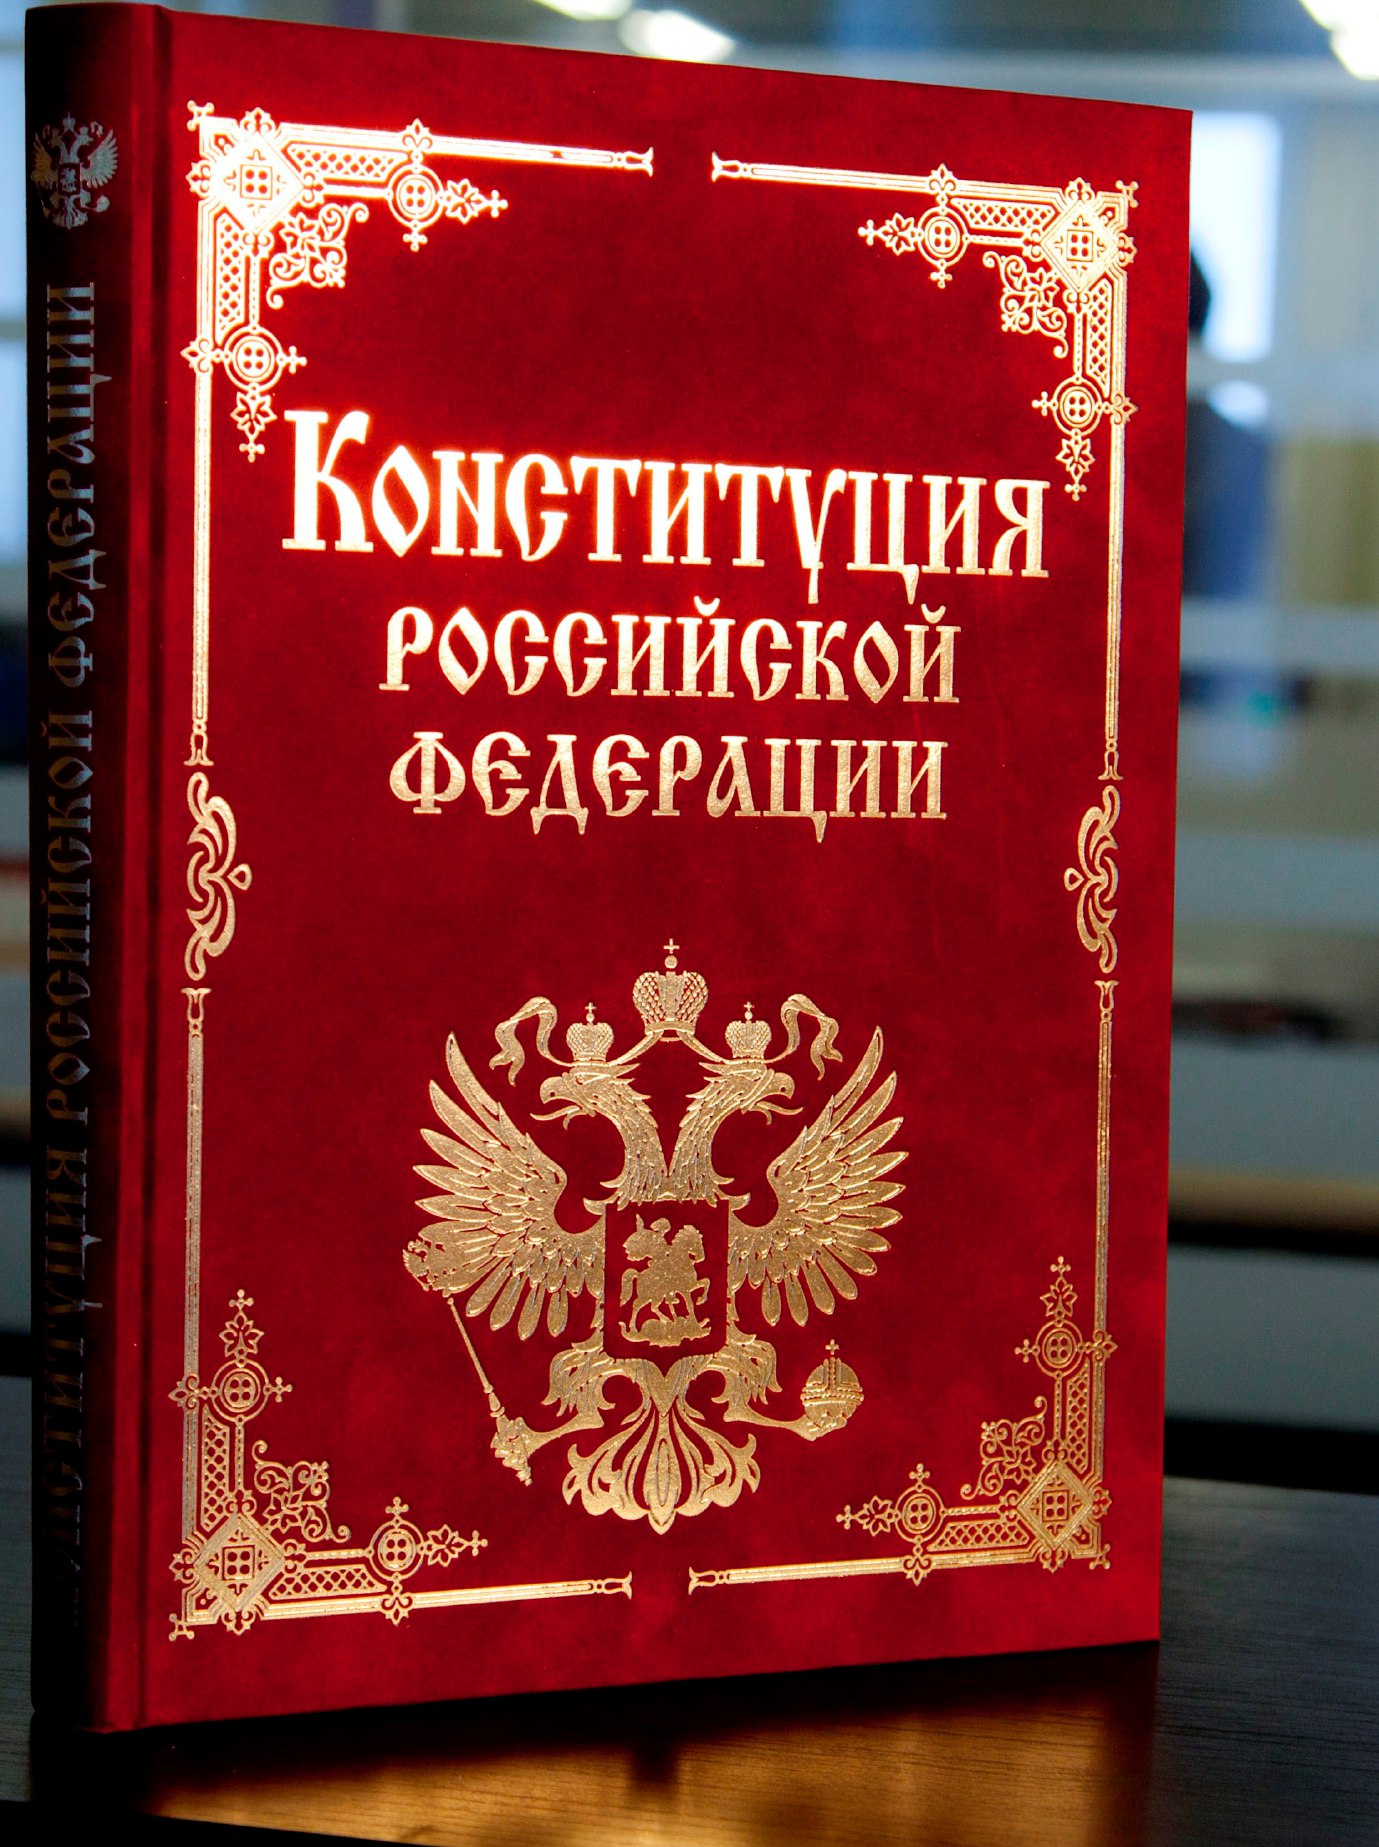 День Конституции Российской Федерации!